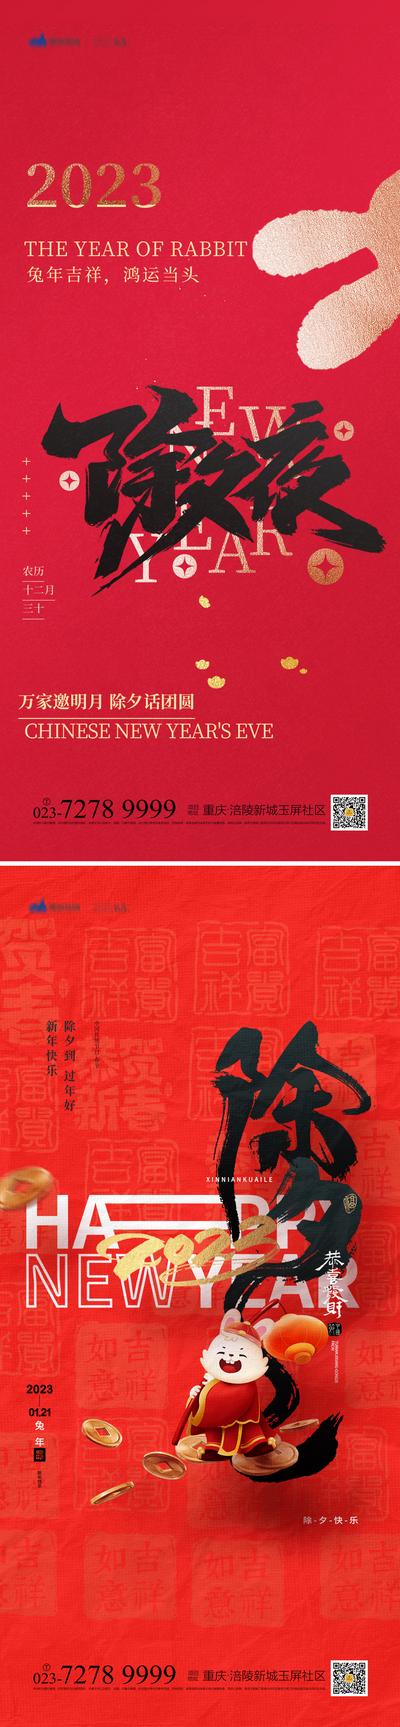 南门网 海报 中国传统节日 除夕 新春 兔子 红色 喜庆